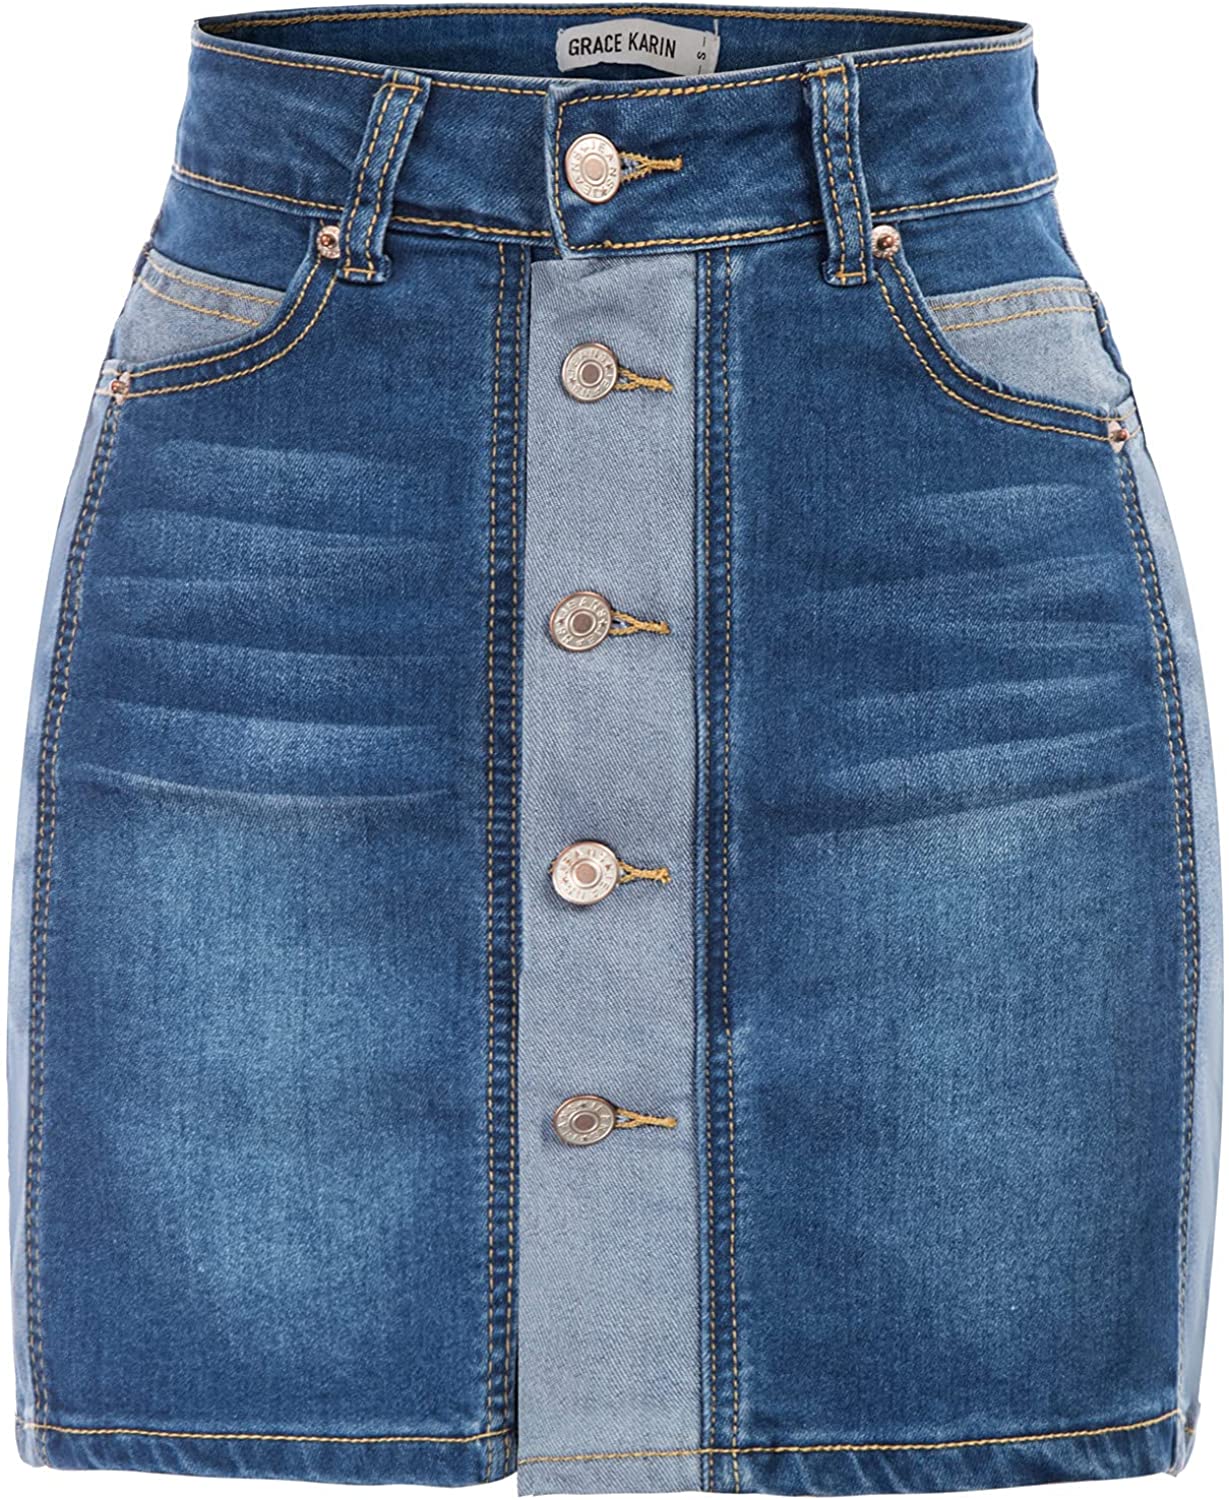 GRACE KARIN Womens Casual Button Down Denim Skirt High Waist Bodycon Pockets Jean Short Skirt